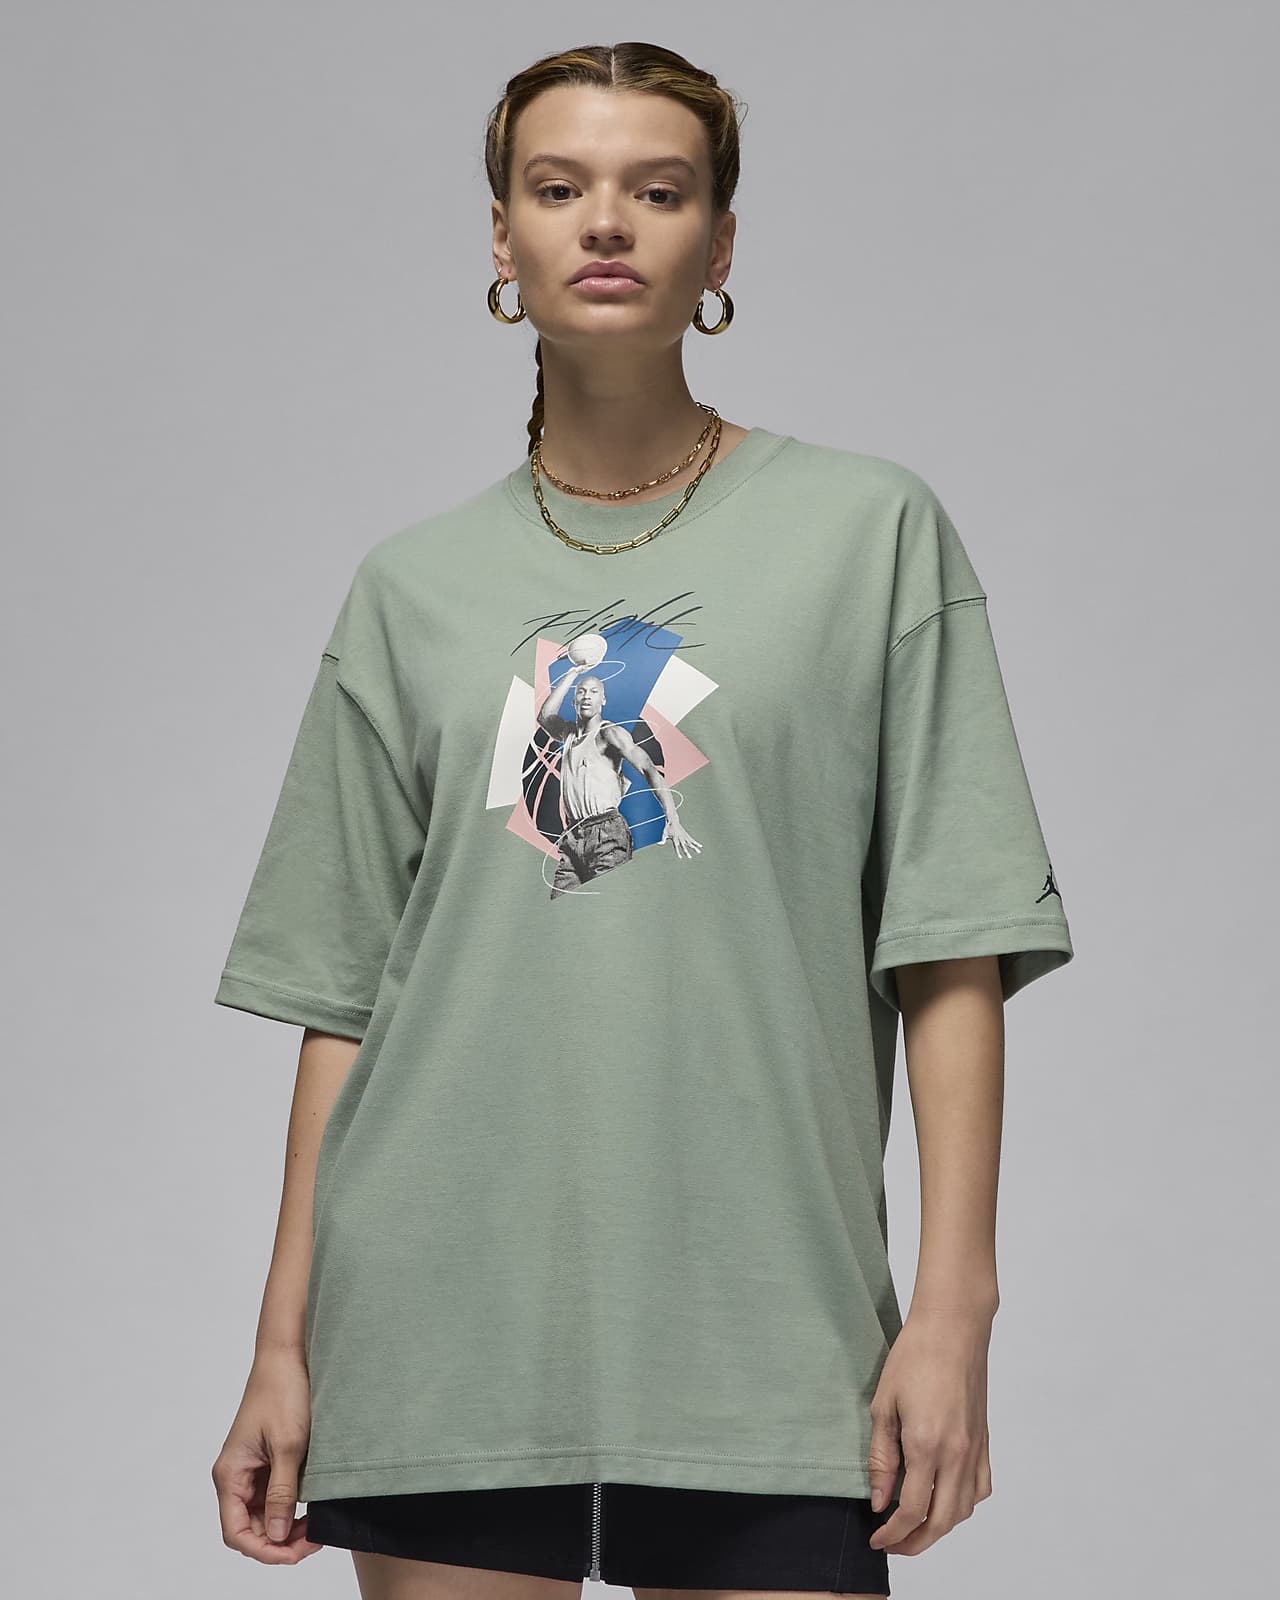 Γυναικείο T-Shirt σε φαρδιά γραμμή με σχέδιο Jordan